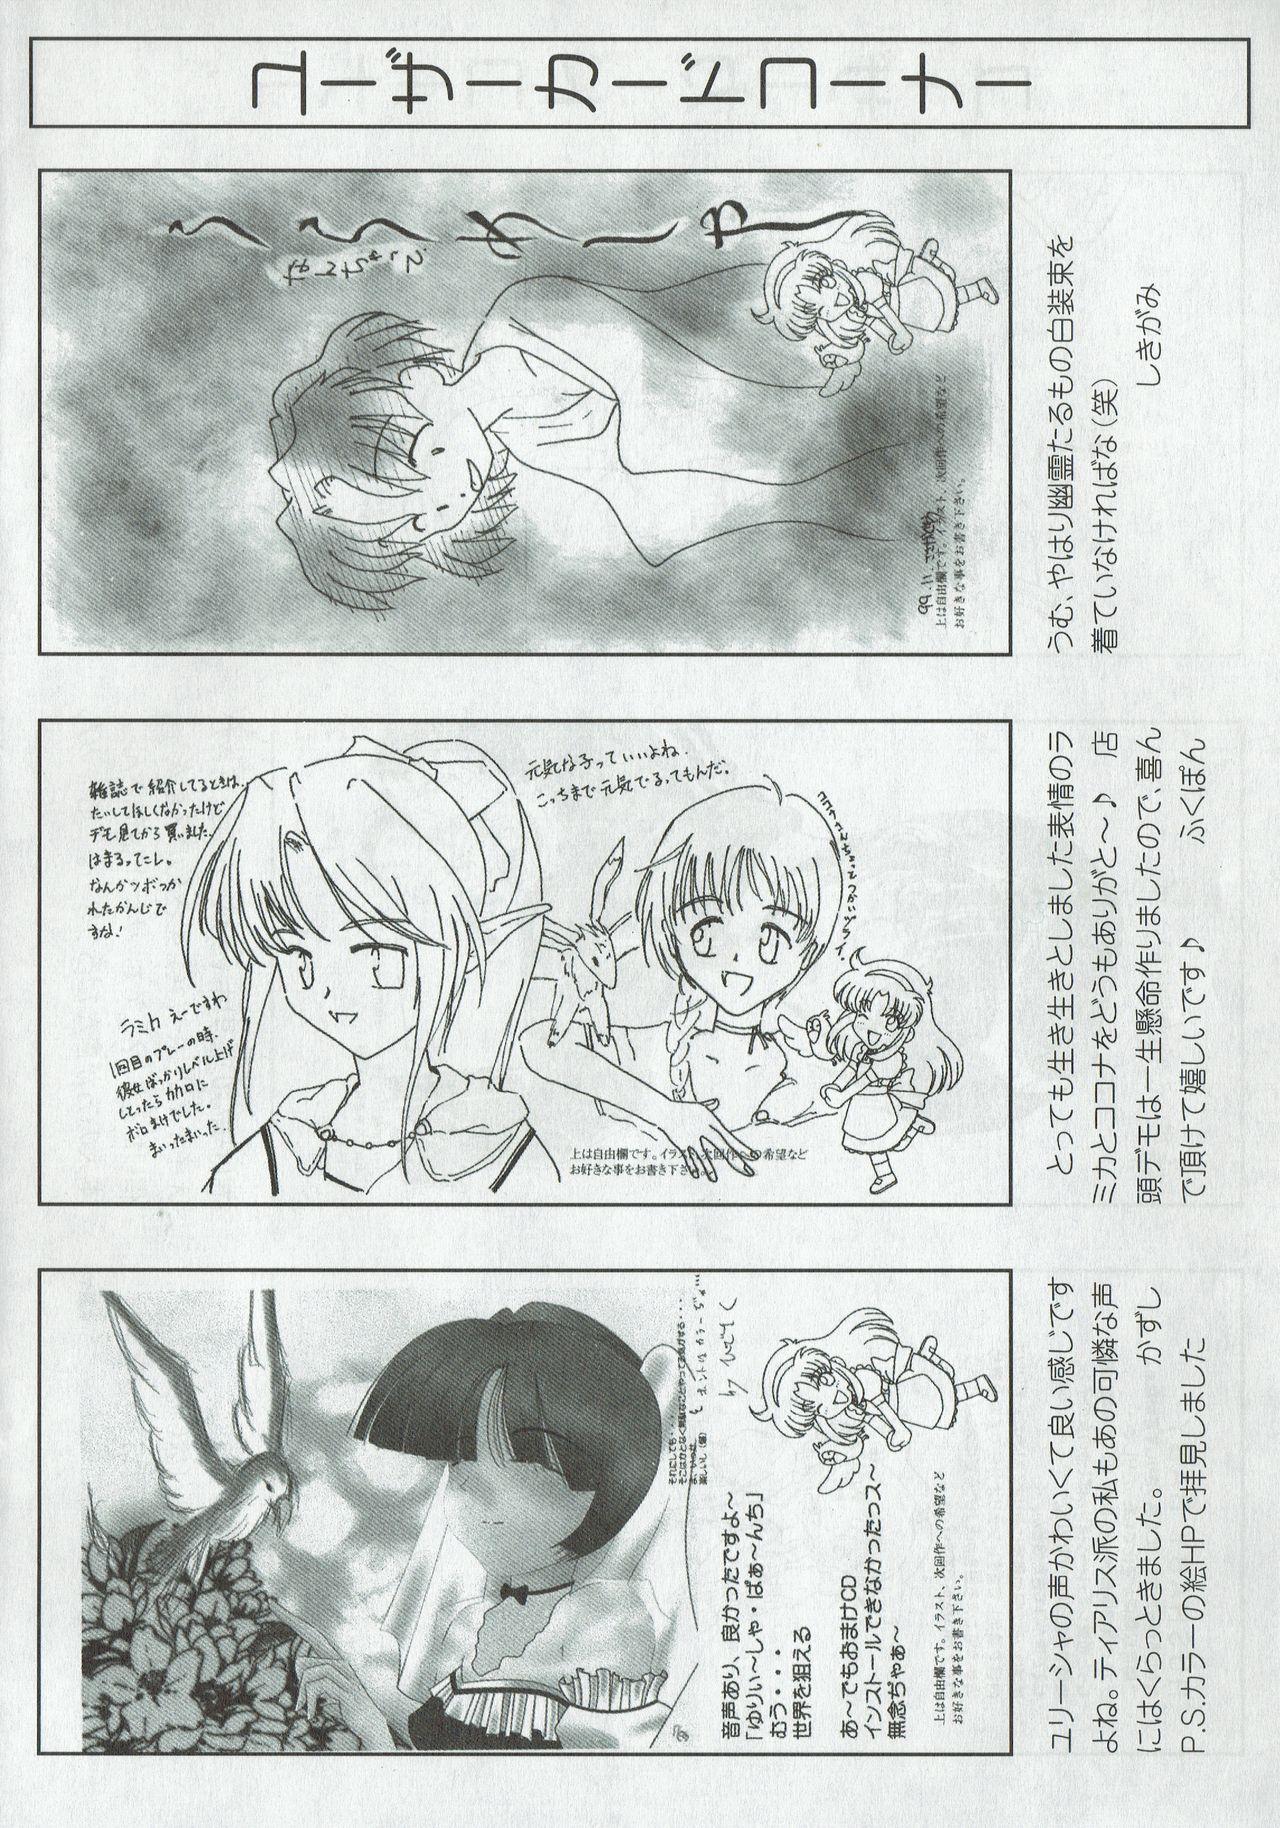 Arisu no Denchi Bakudan Vol. 09 24